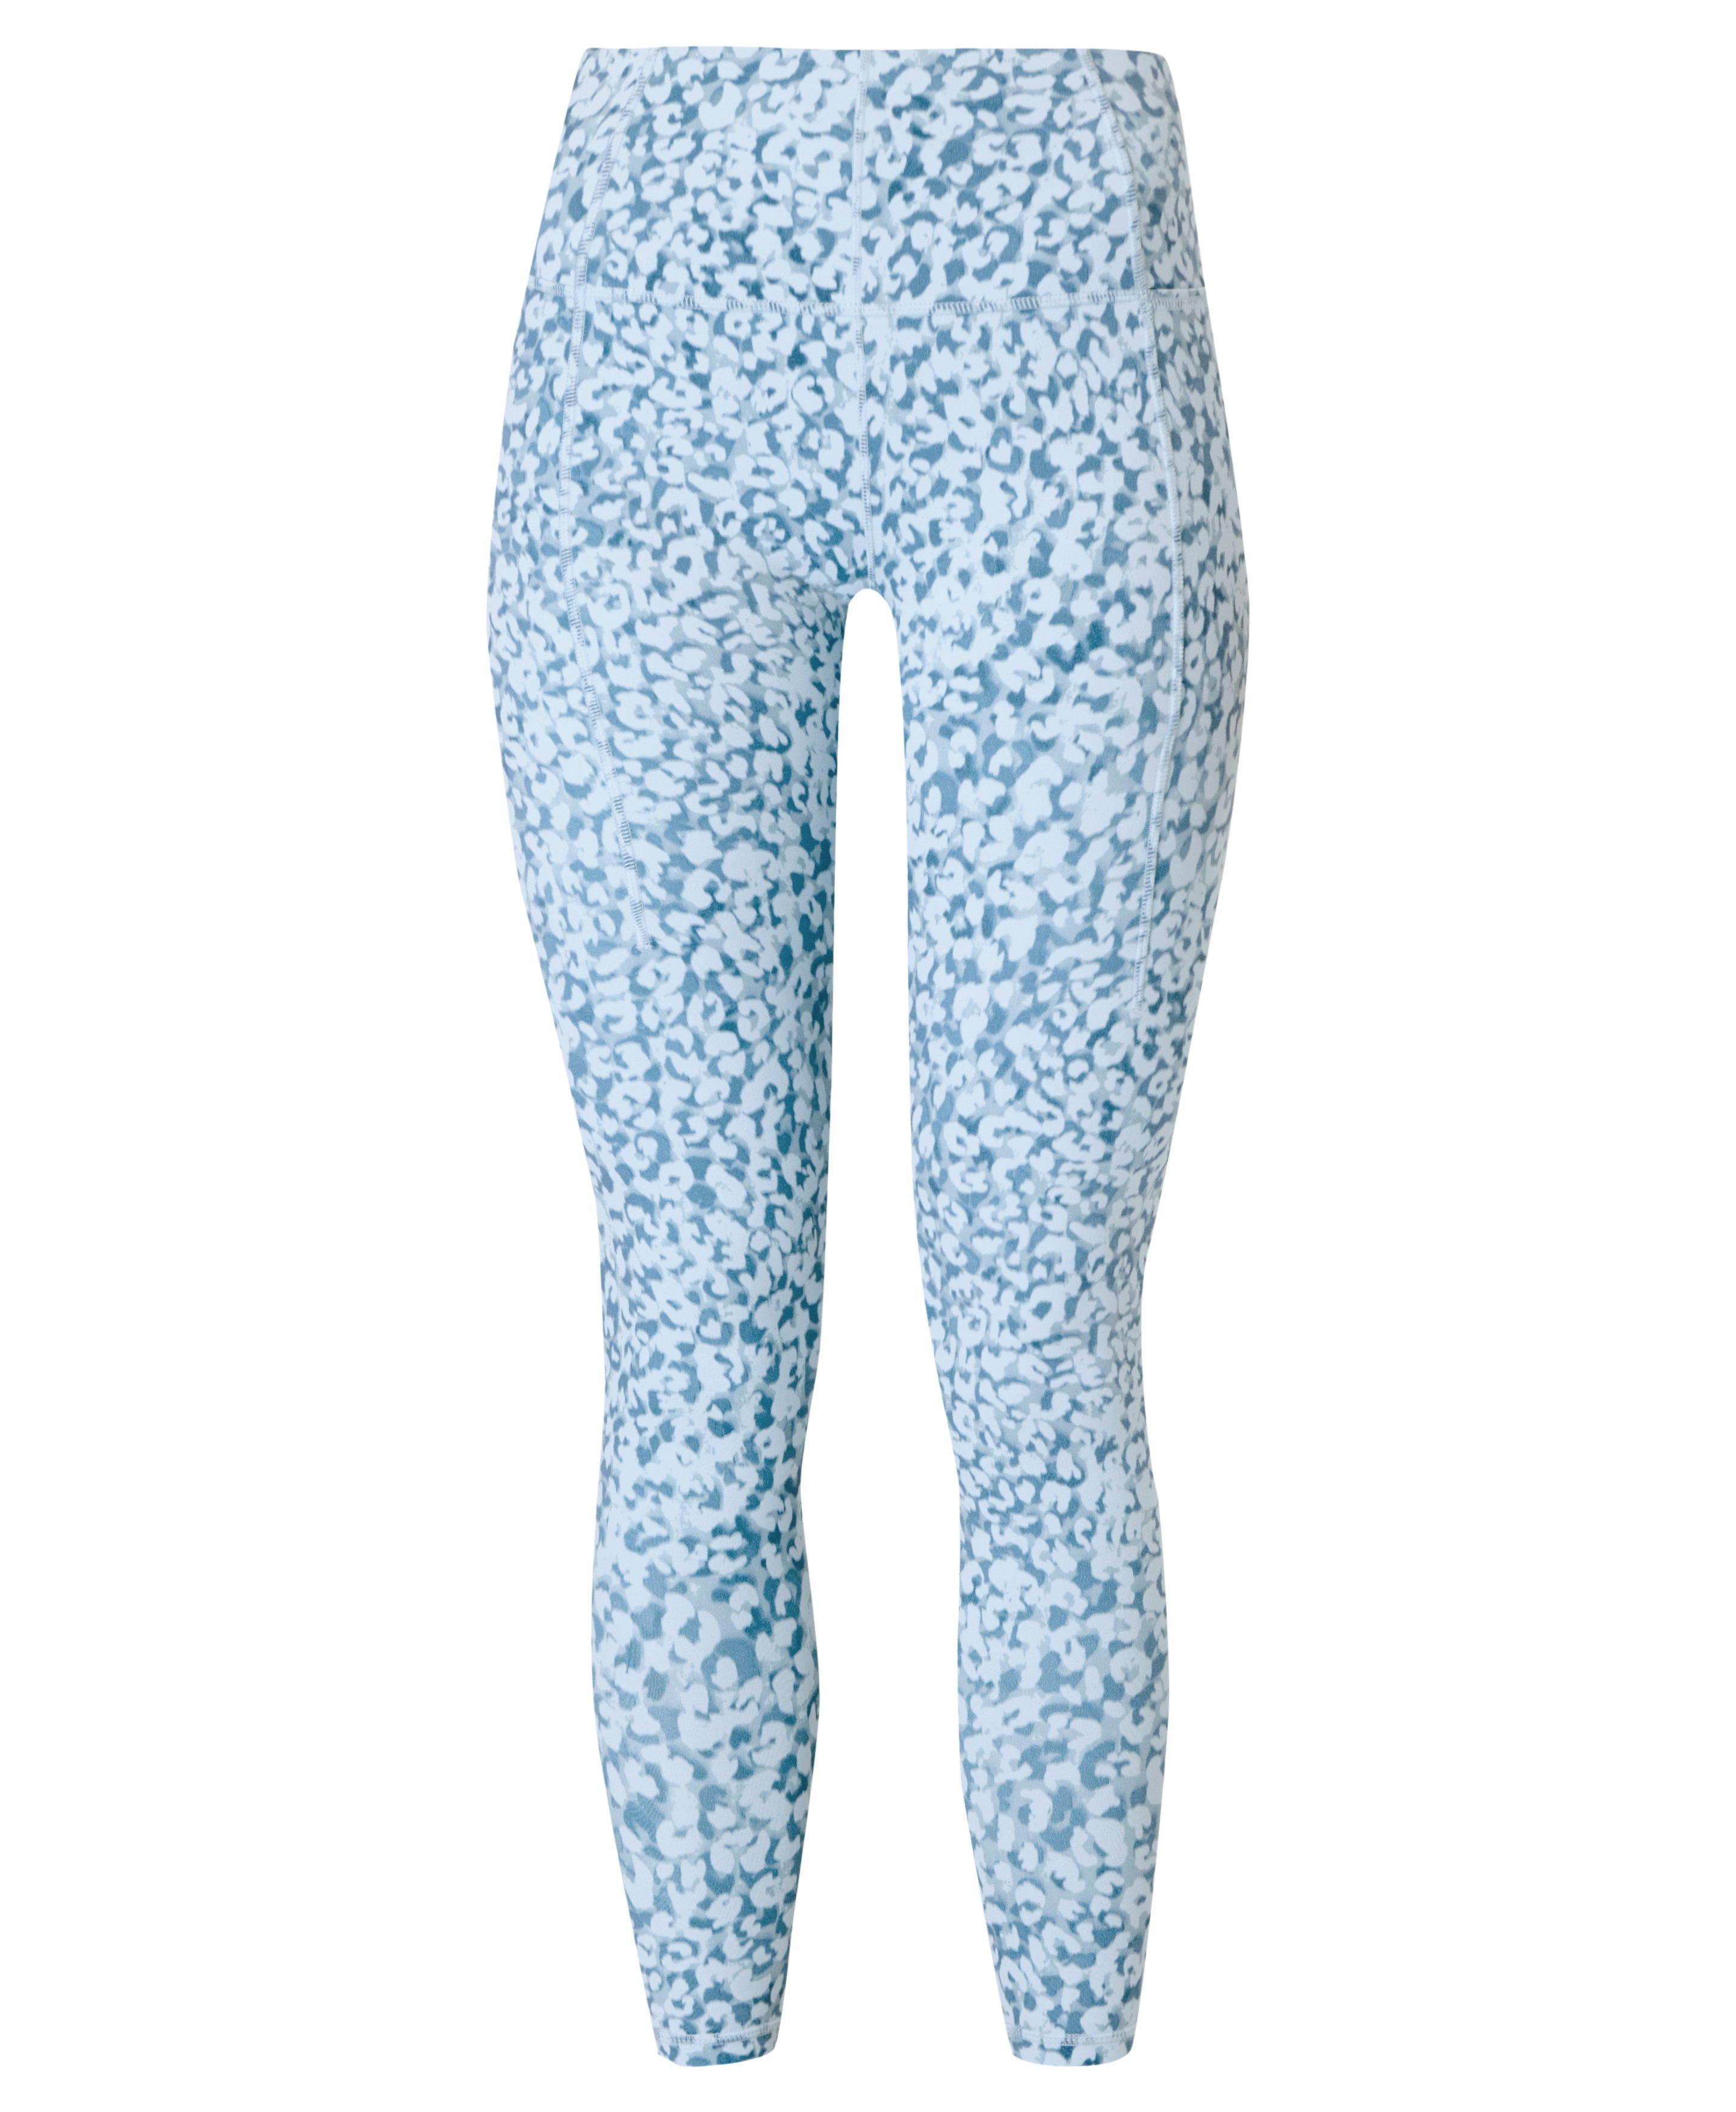 Super Soft Yoga Leggings - Blue Snow Leopard Print, Women's Leggings